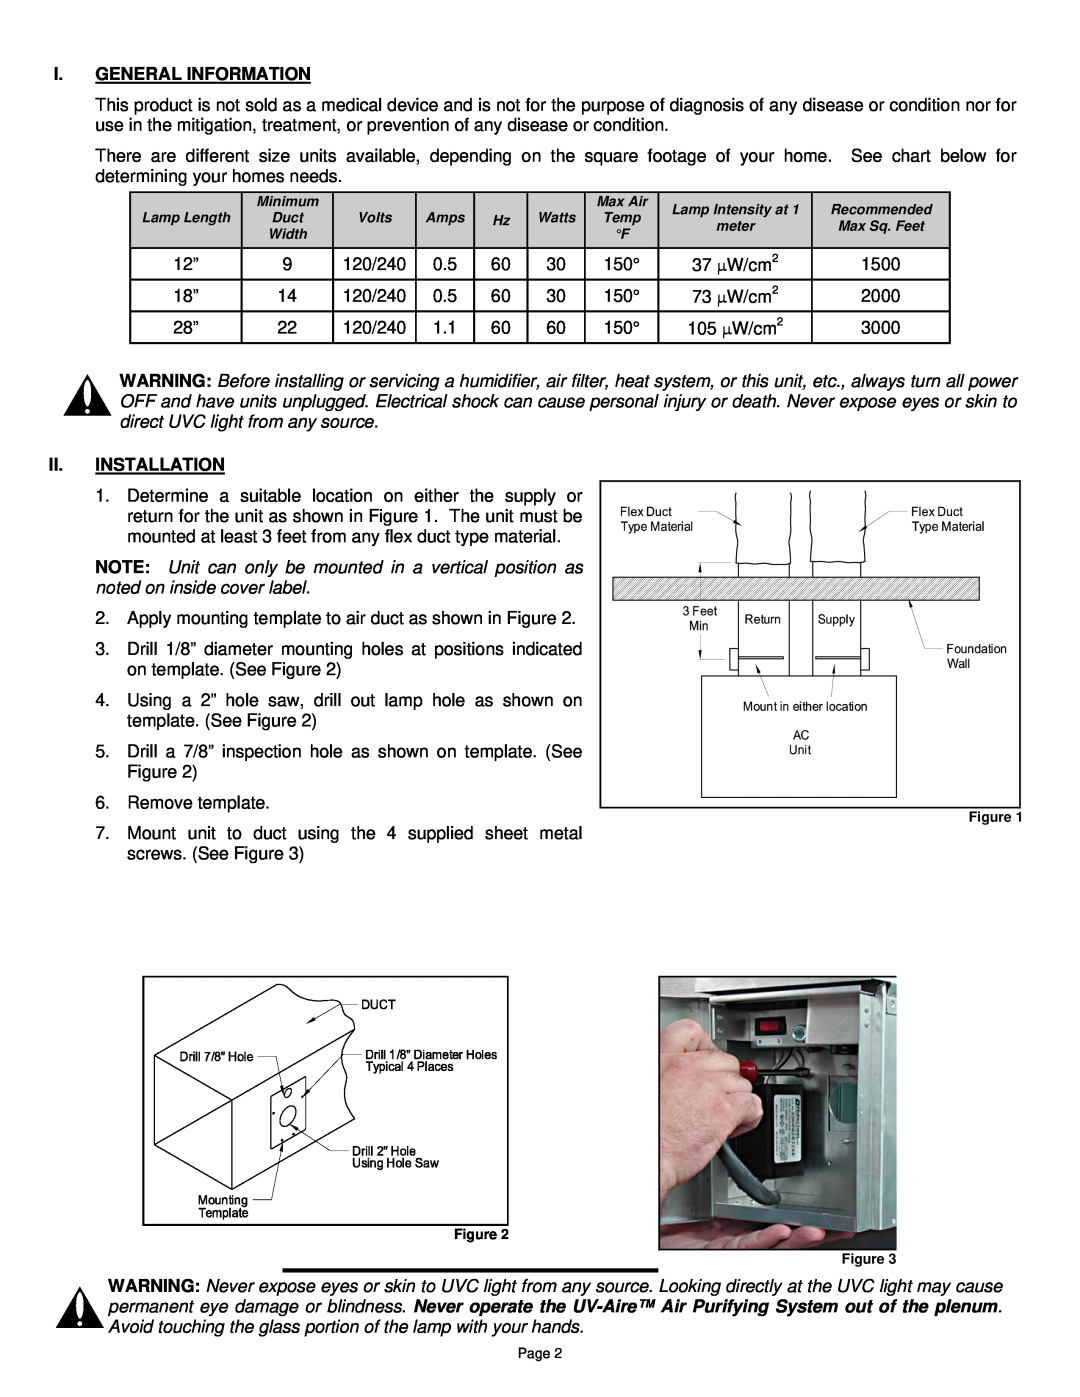 Field Controls UV-E installation instructions I.General Information, Ii.Installation 